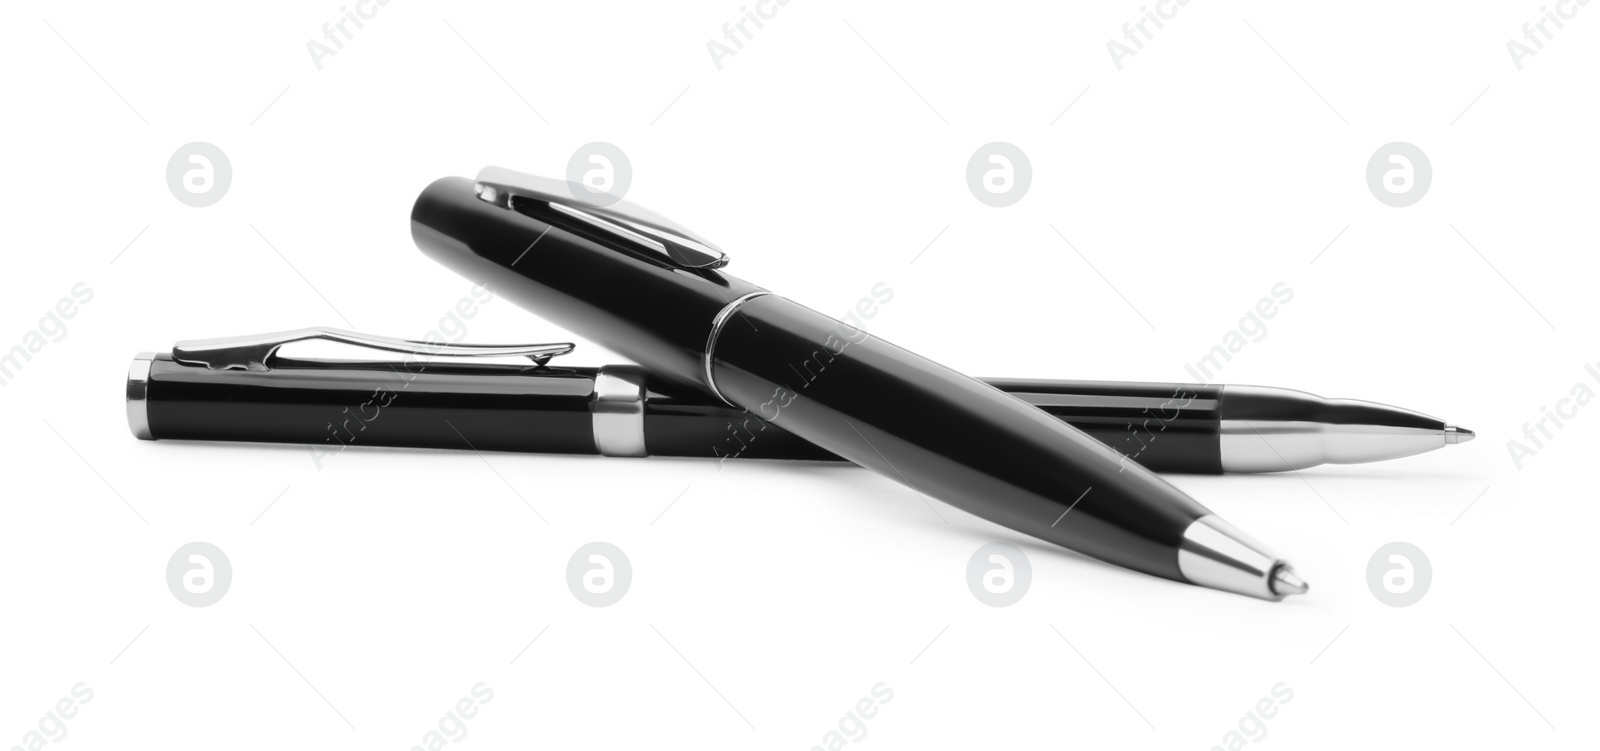 Photo of New stylish black pens isolated on white